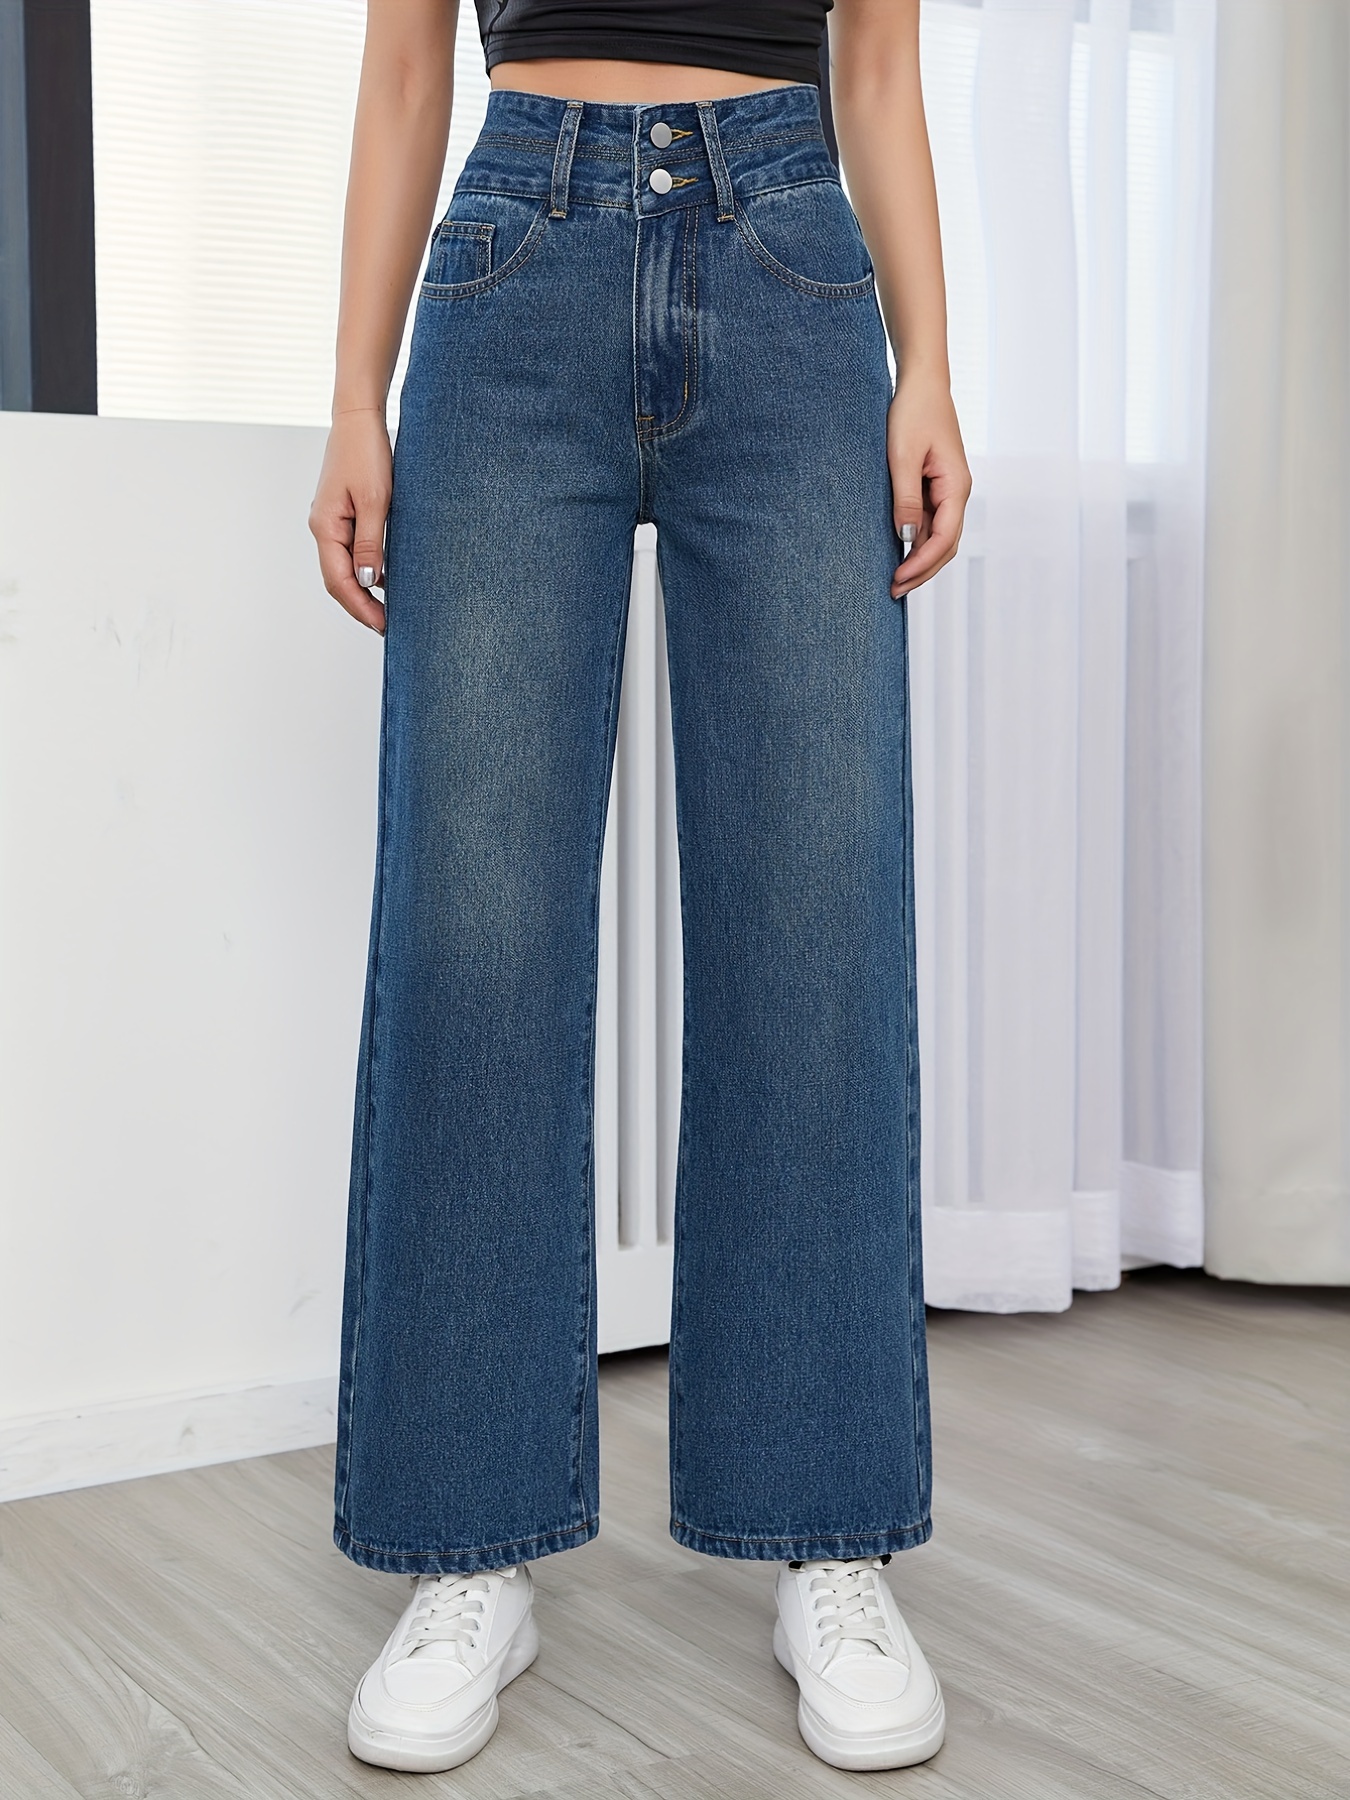 Los jeans rectos y de cintura alta de Louis Vuitton también serán tendencia